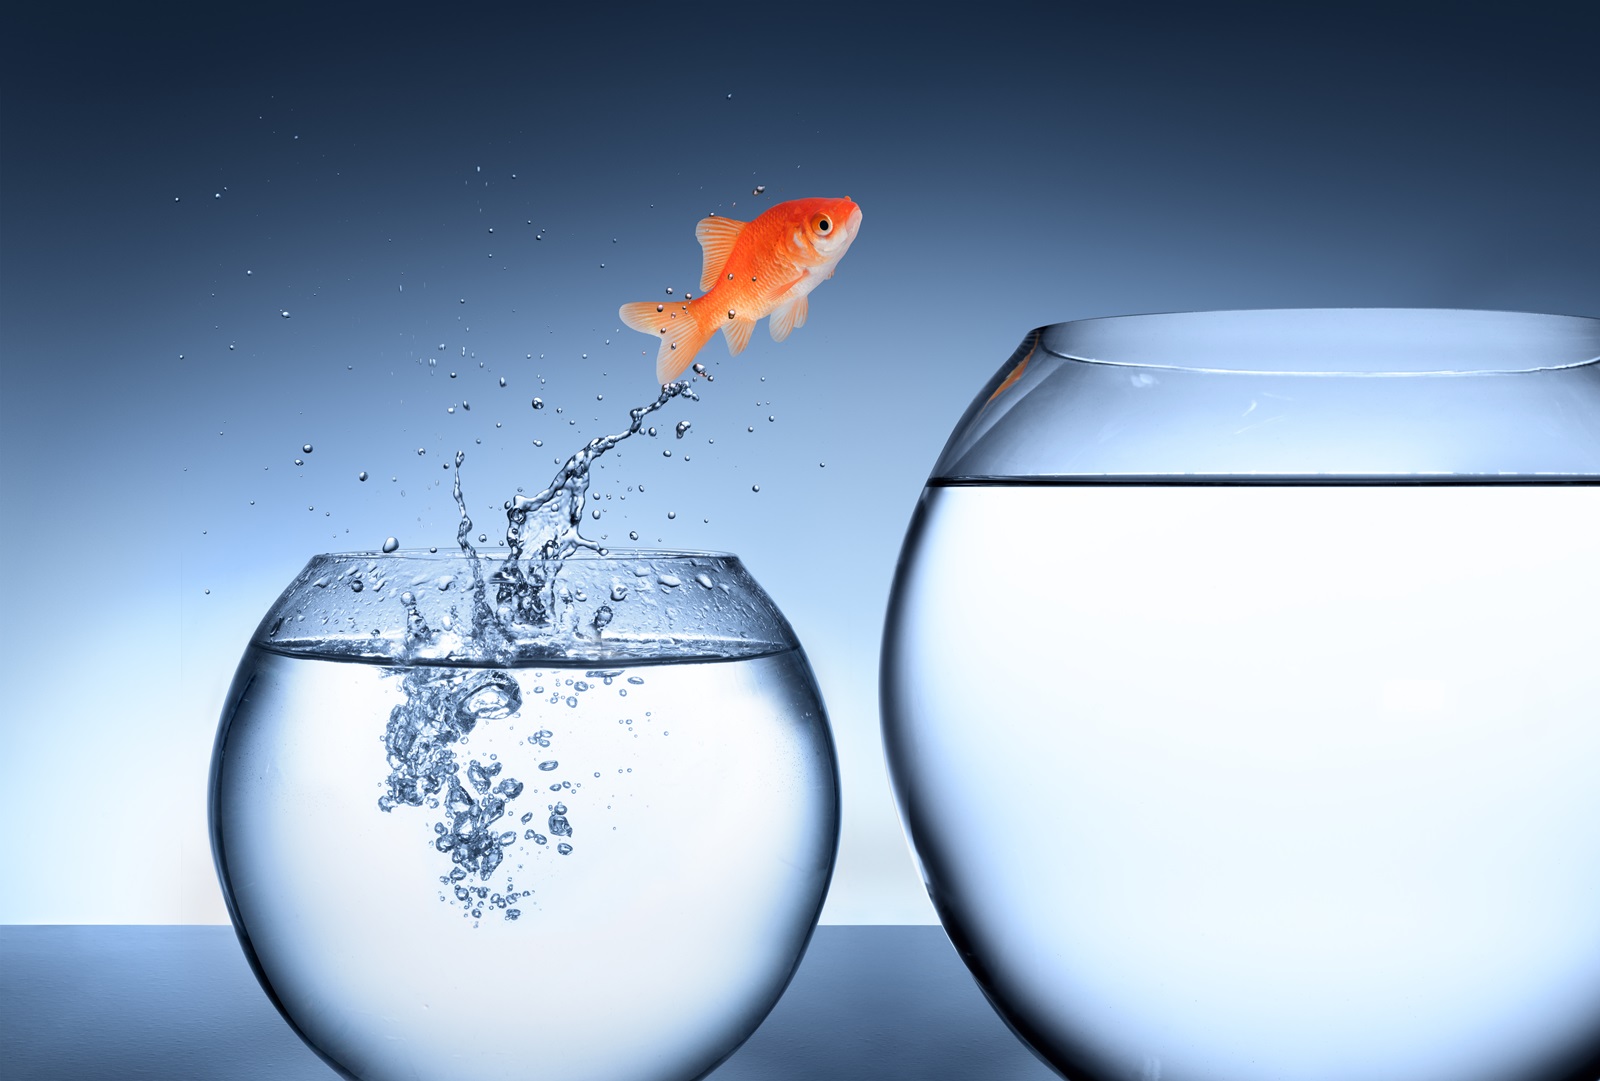 Ilustrando mudança, imagem mostra peixe pulando de um aquário para outro